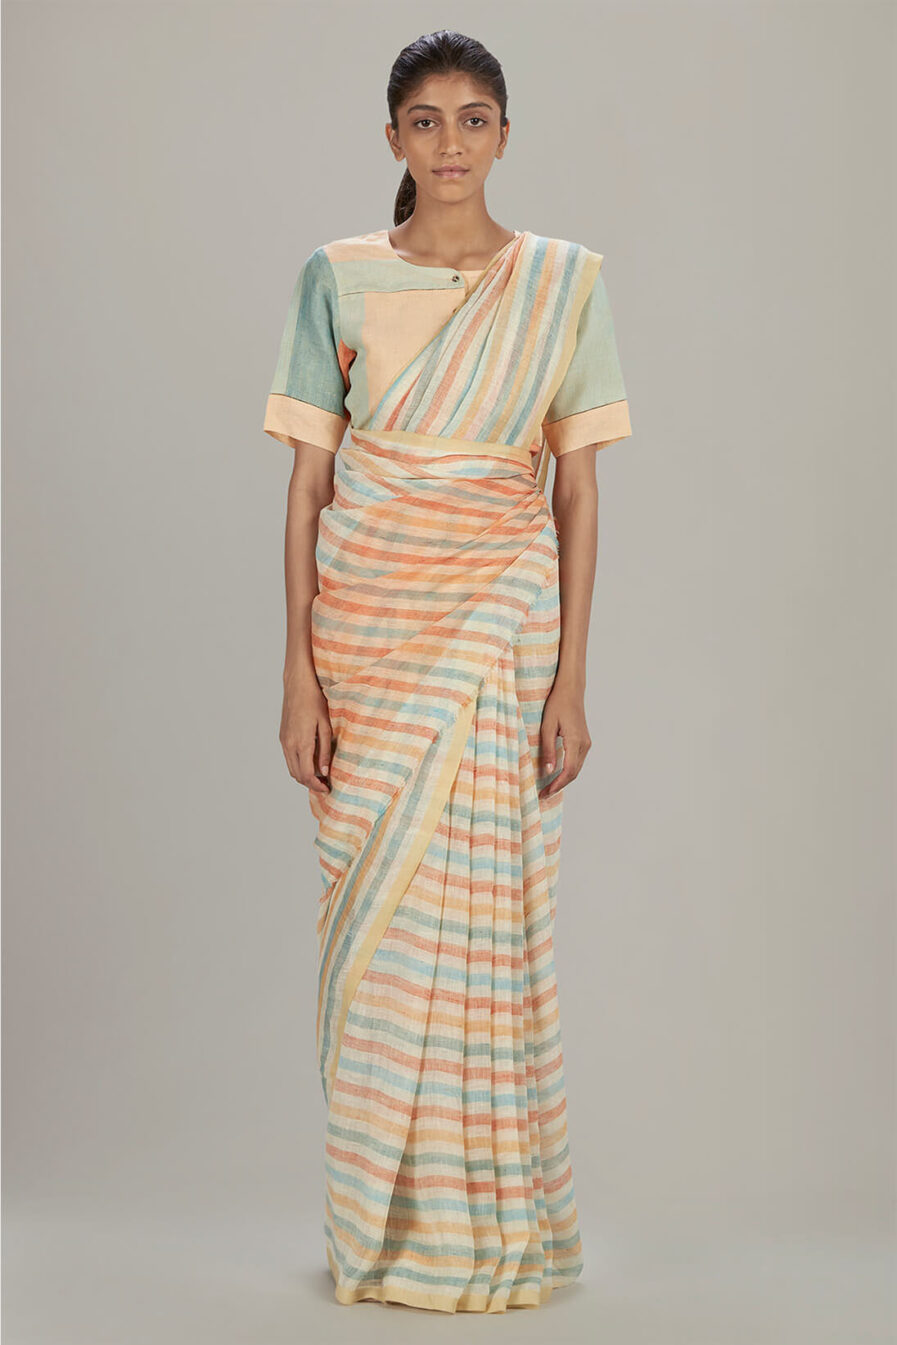 Anavil Graded stripe linen sari